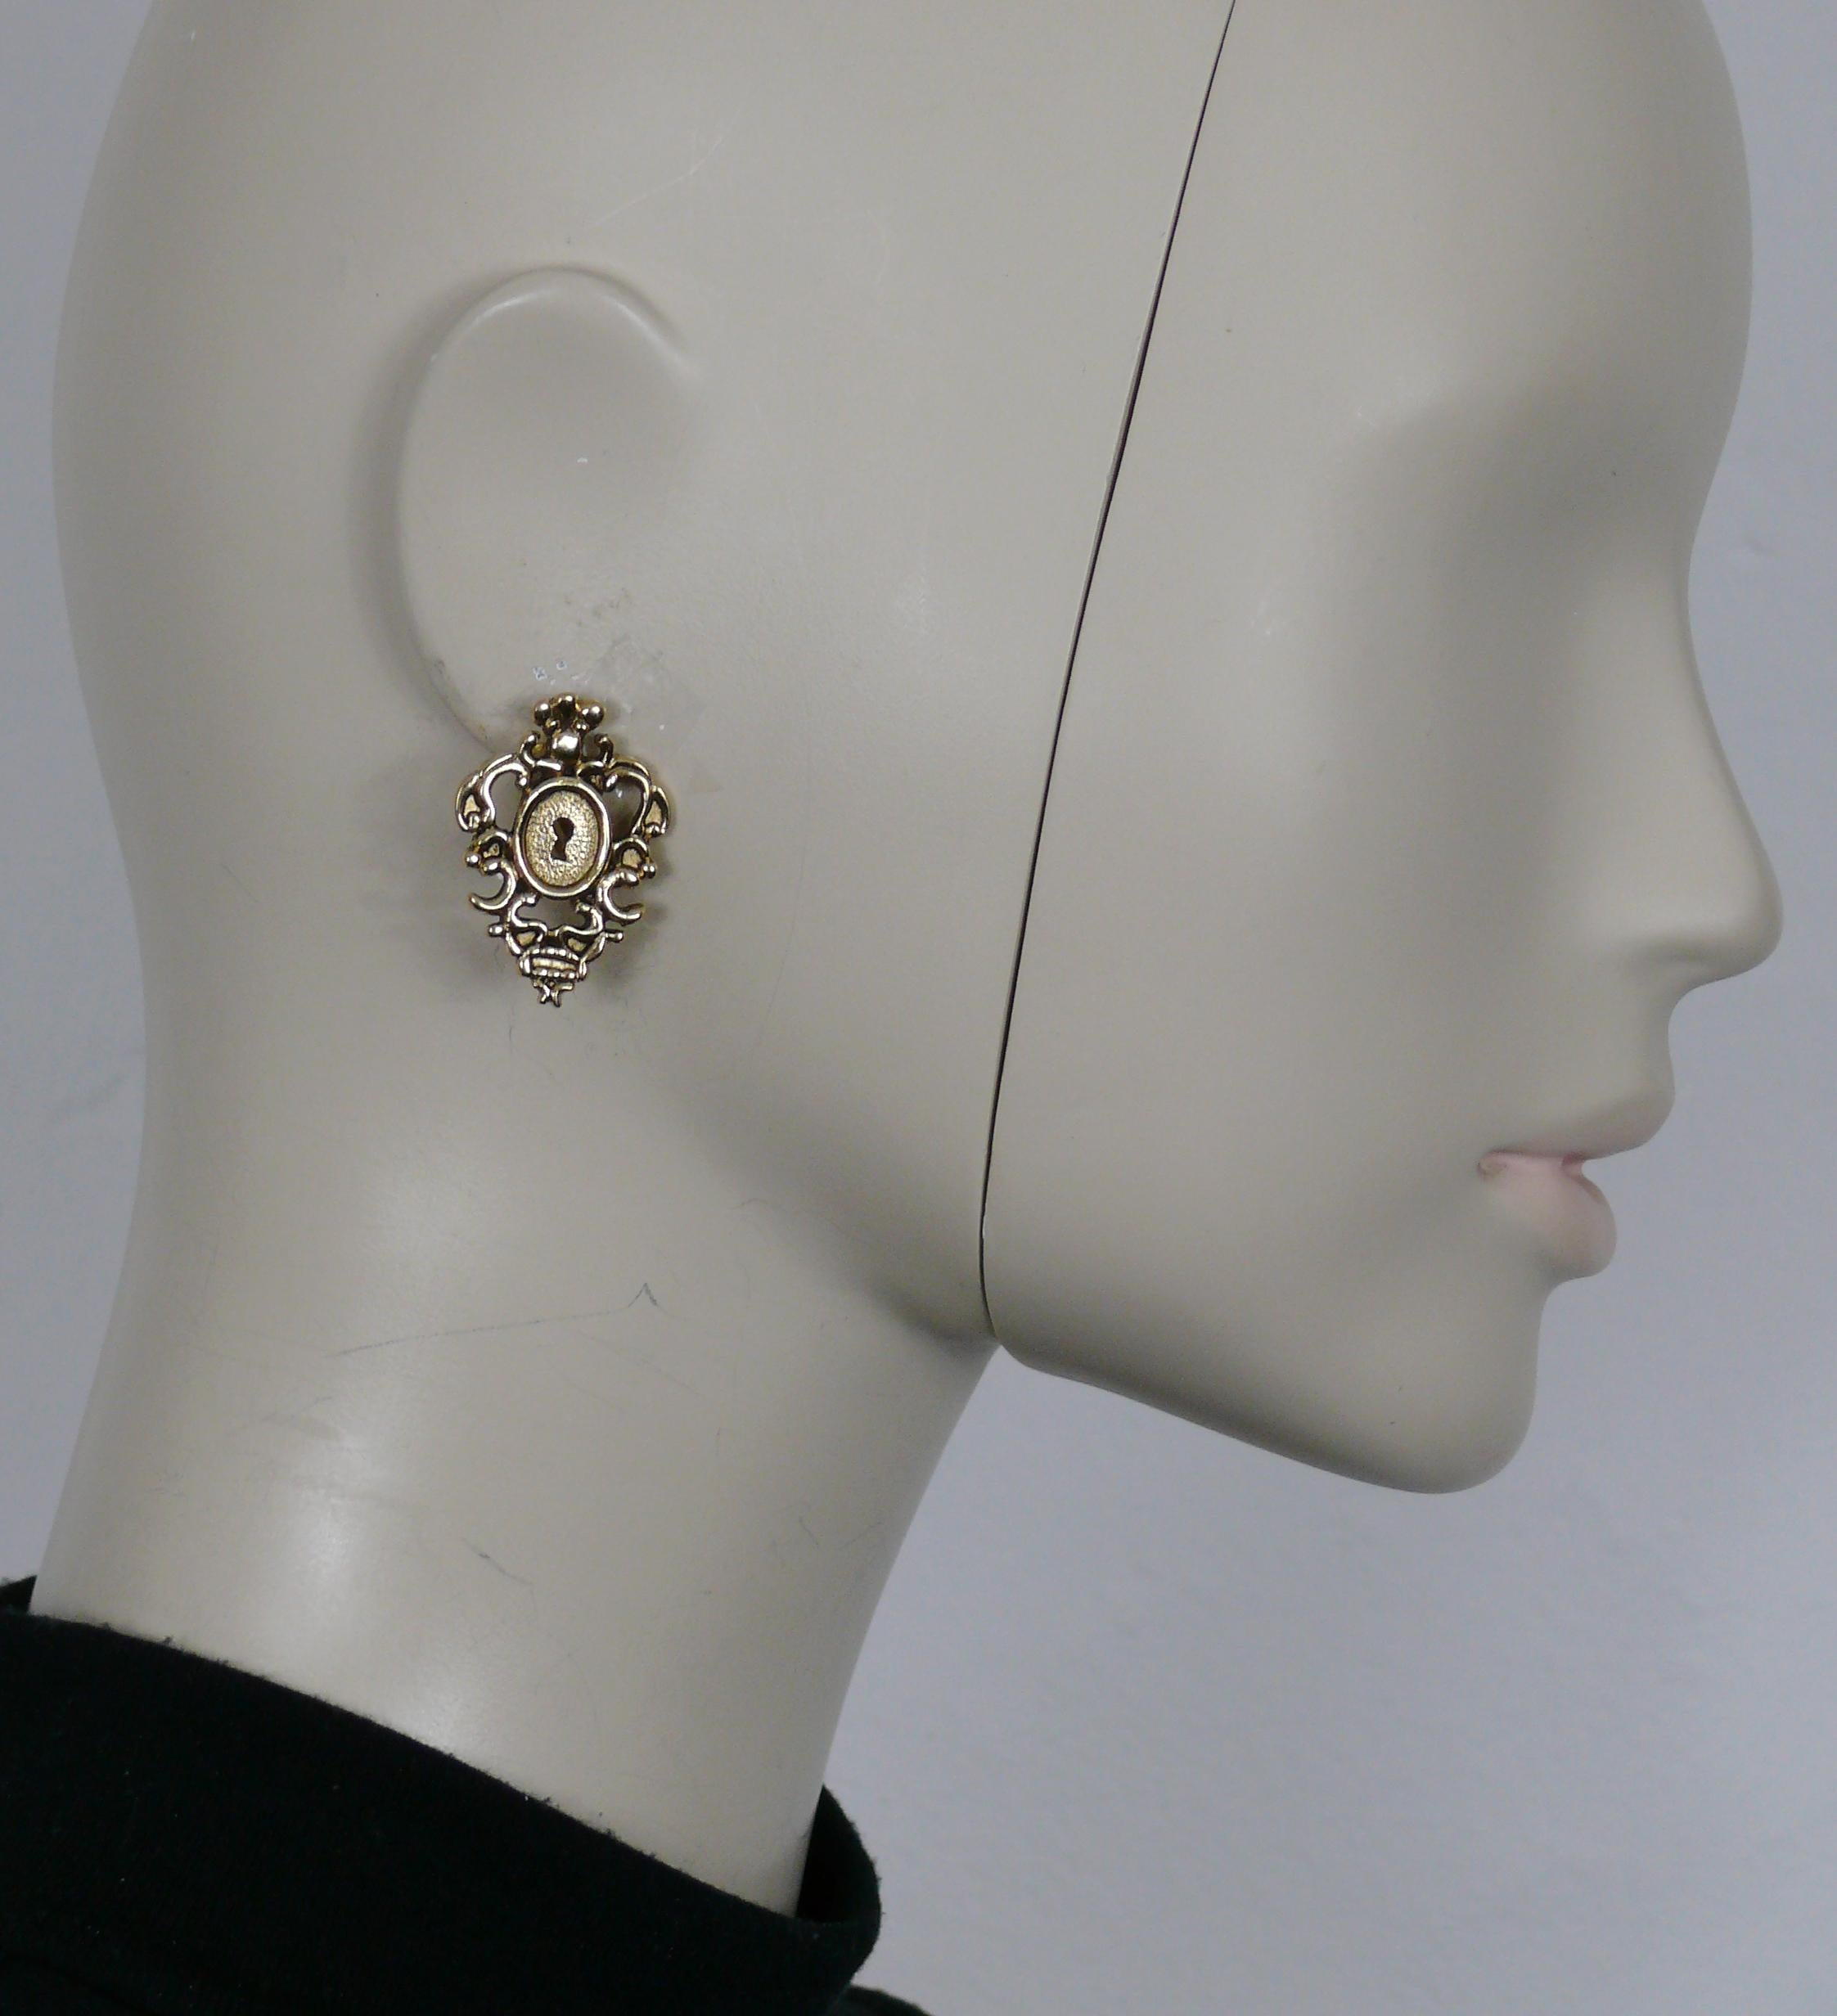 ROCHAS Vintage goldfarbene barocke Ohrringe mit Schlüssellochverschluss.

Geprägte ROCHAS

Ungefähre Maße: max. Höhe ca. 3,4 cm (1,34 Zoll) / max. Breite ca. 2,4 cm (0,94 Zoll).

Gewicht pro Ohrring: ca. 6 Gramm.

MATERIALIEN : Goldfarbene